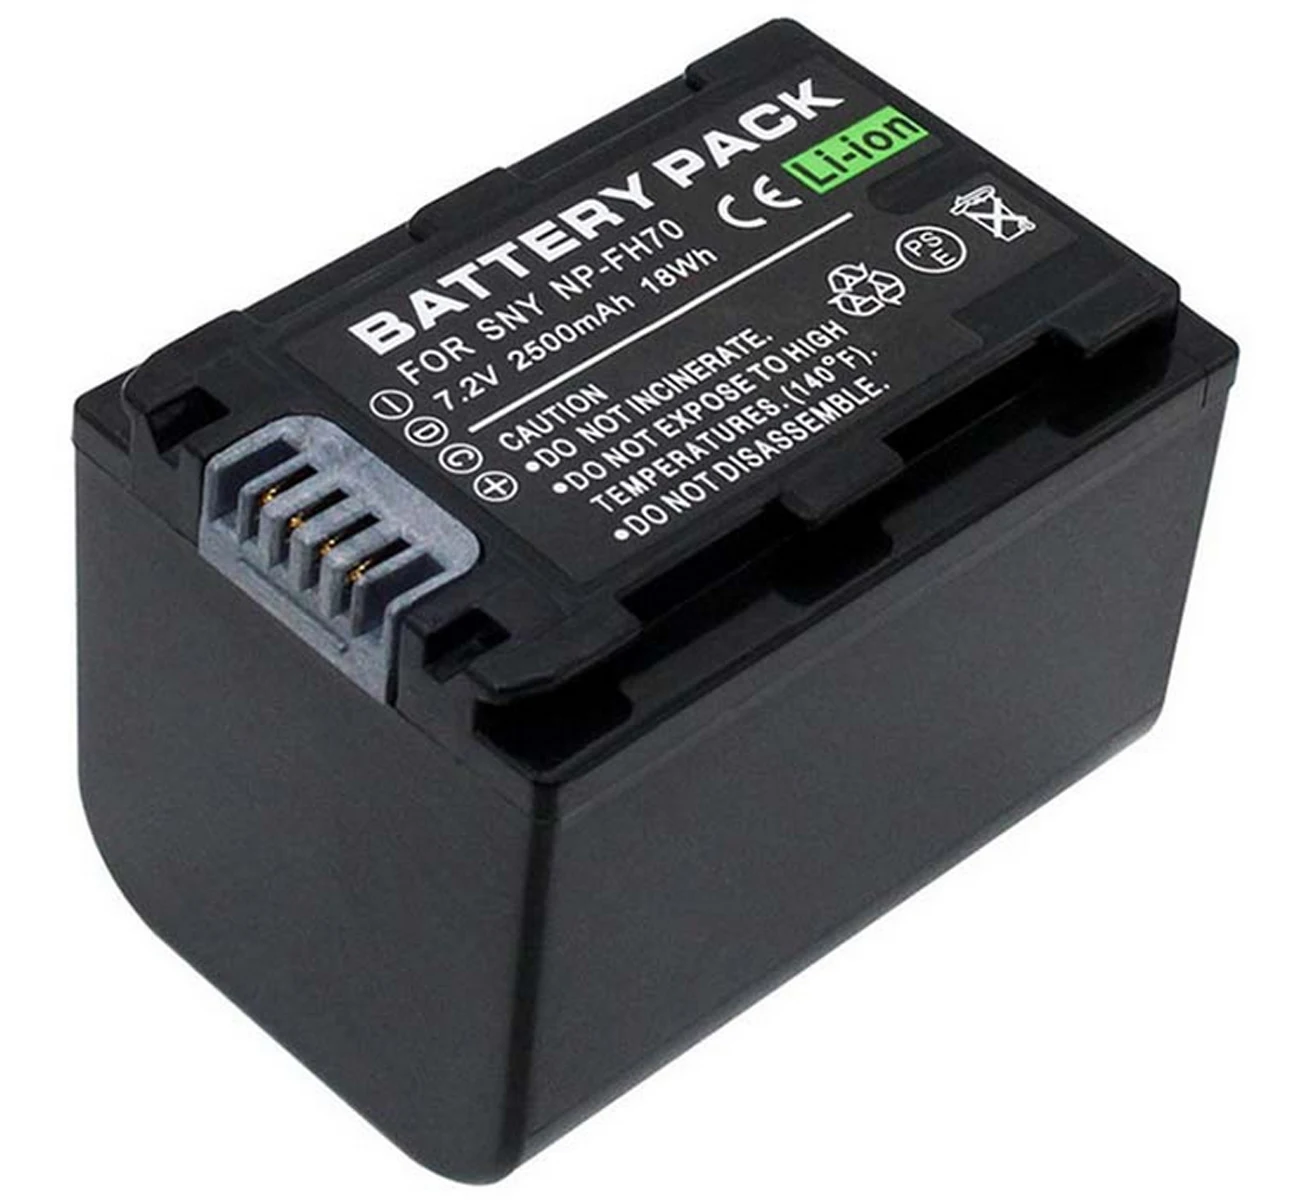 

Battery Pack for Sony DCR-SR190E, DCR-SR200E, DCR-SR210E, DCR-SR220E, DCR-SR290E, DCR-SR300E, DCR-SR300C Handycam Camcorder